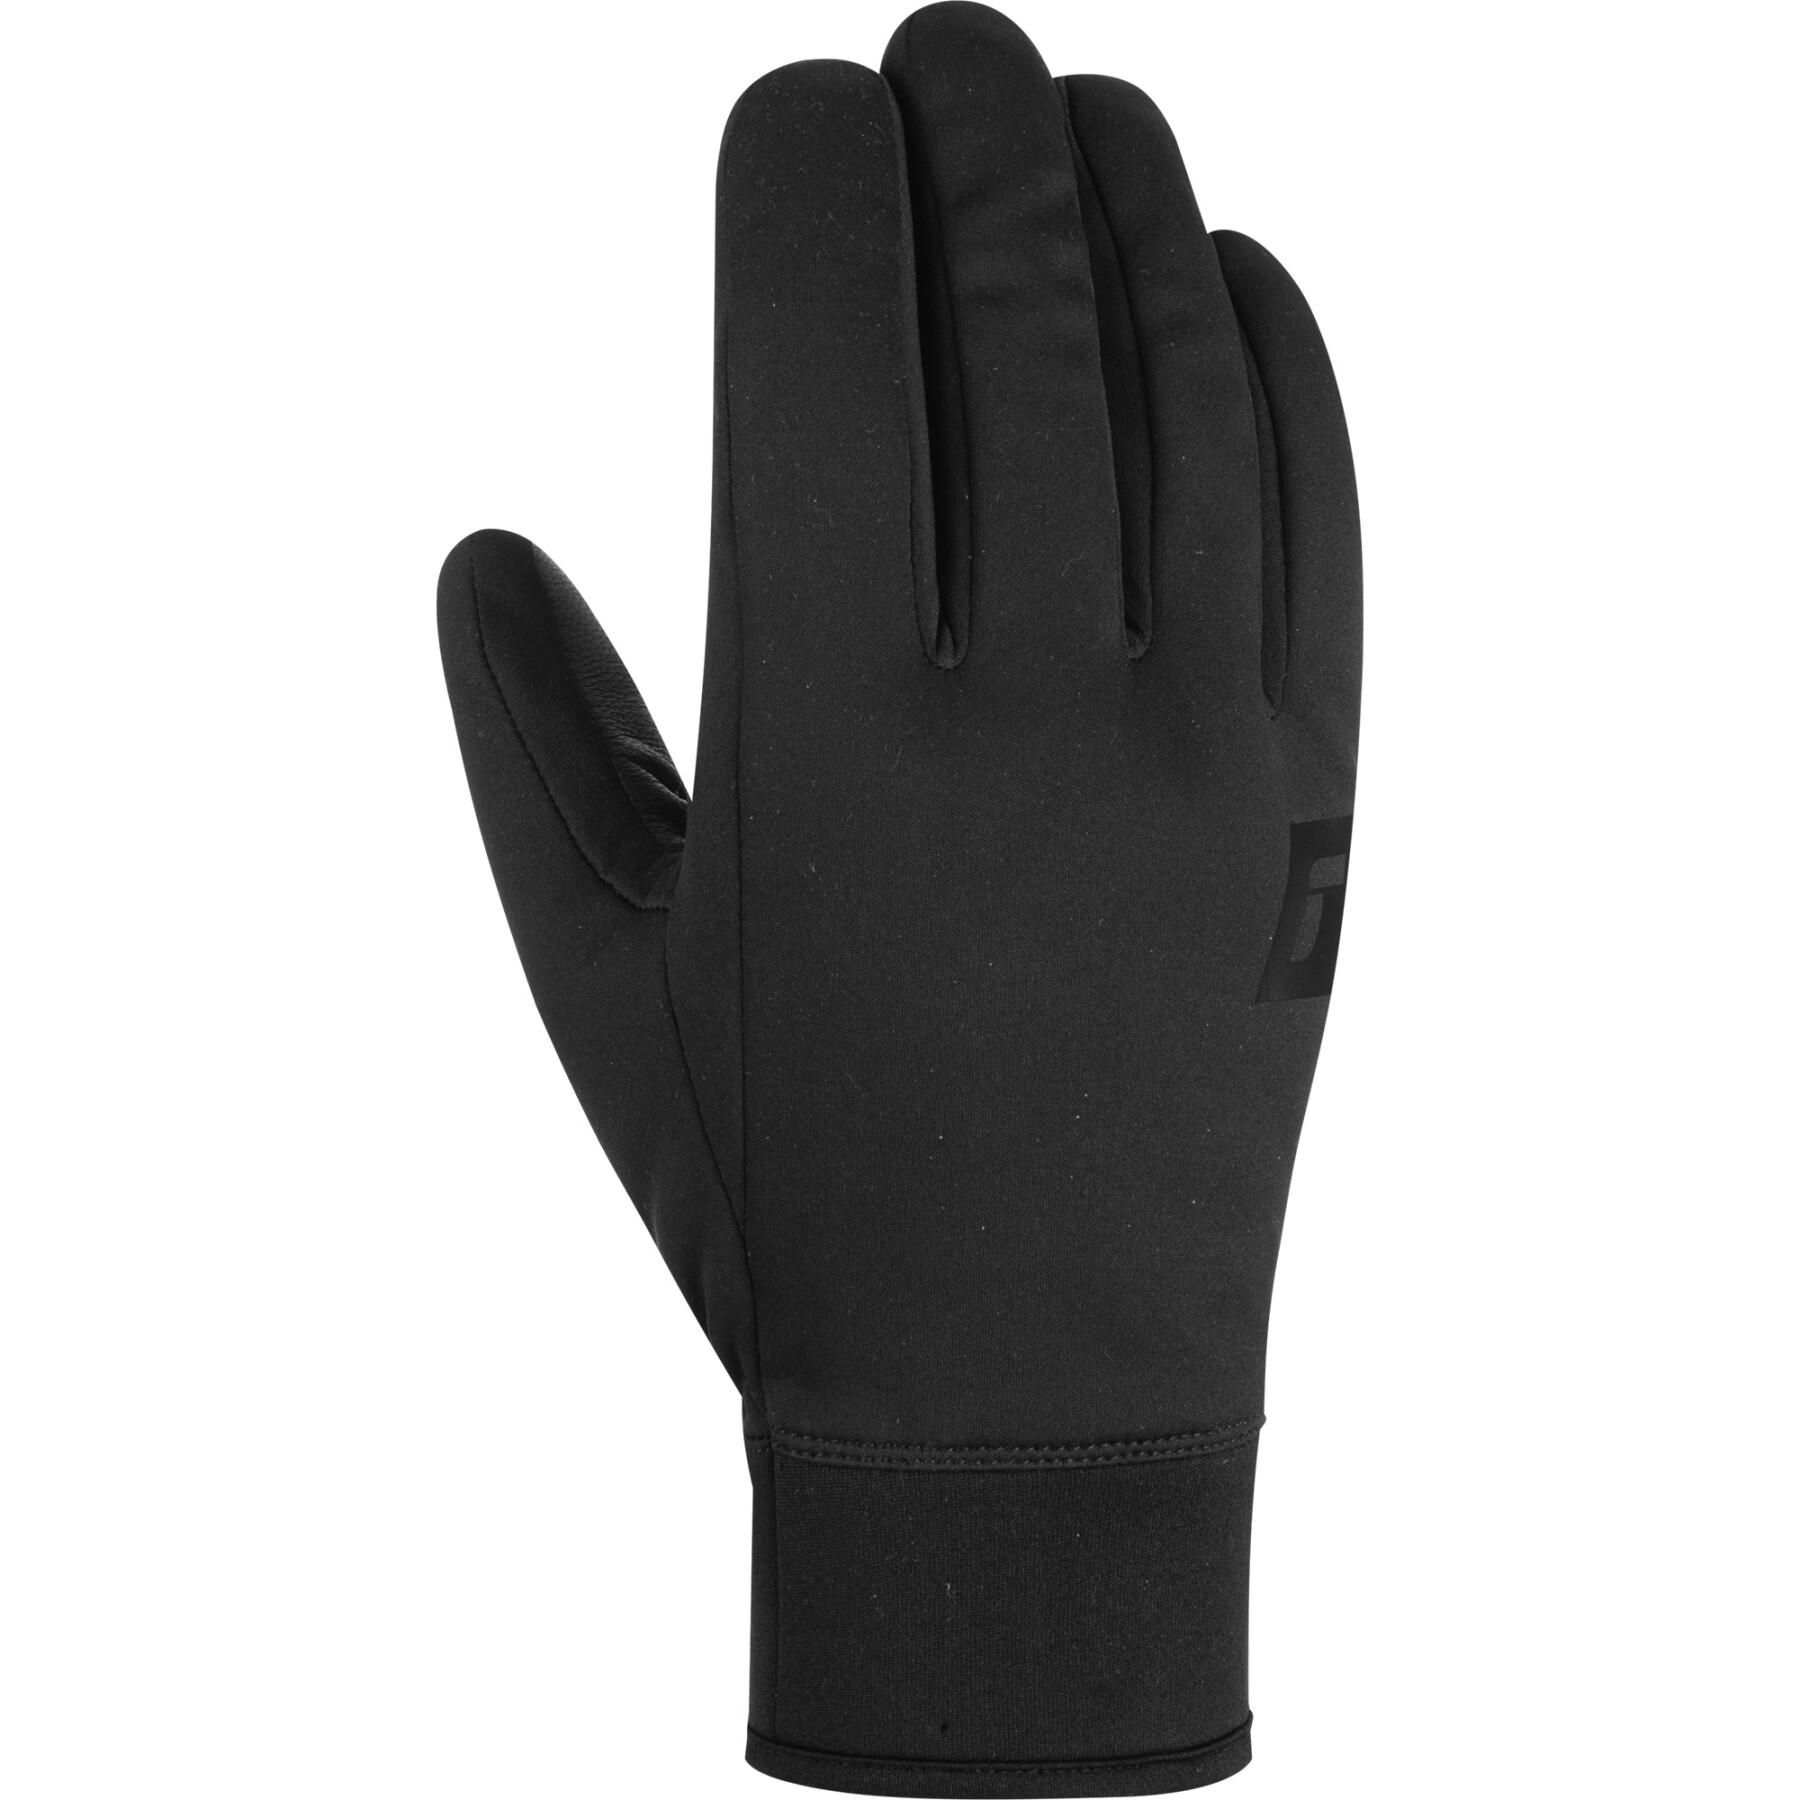 Ski gloves Accessories - - - Purist Gloves Reusch Winter Touch-Tec Sports